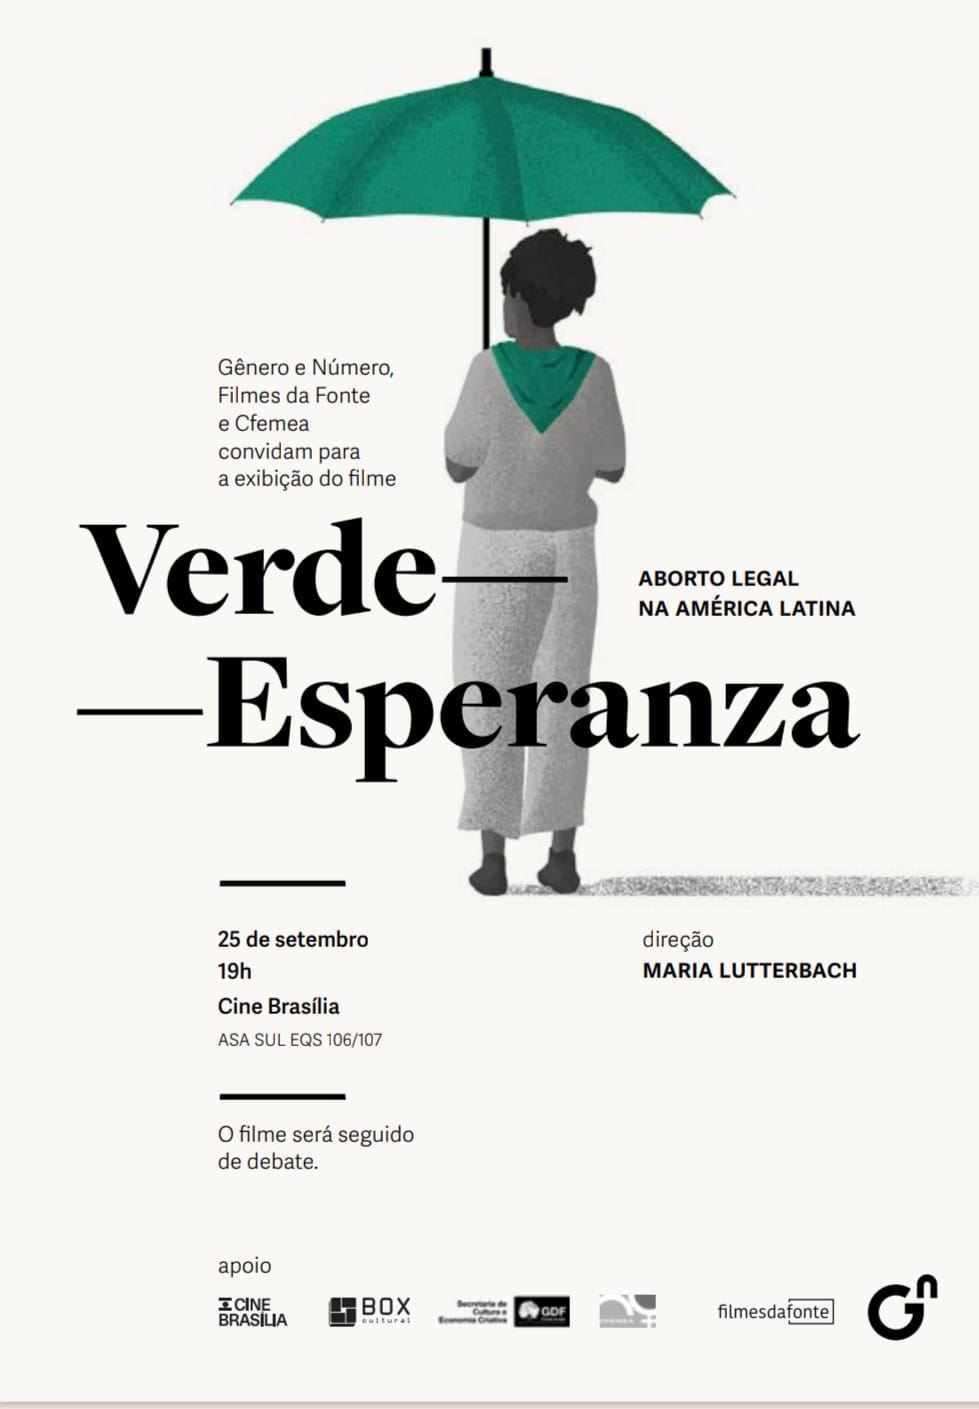 Verde-Esperanza: aborto legal na América Latina